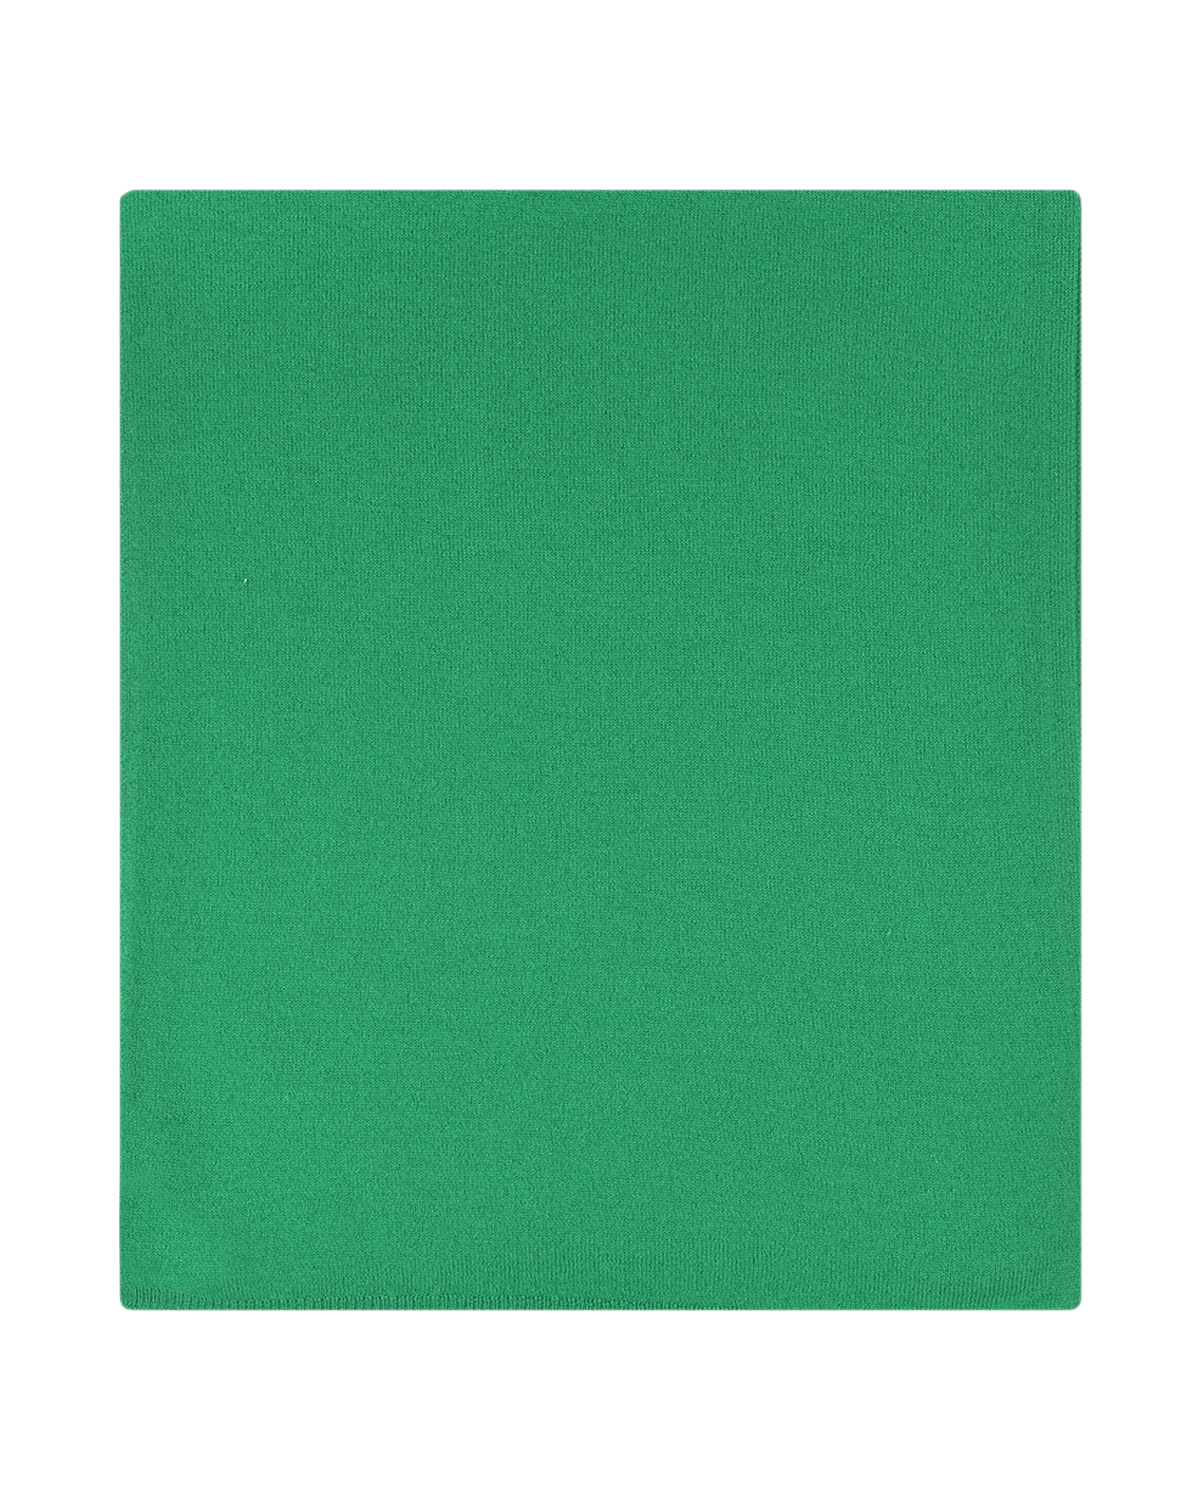 Зеленый шарф, 200x40 см Naumi детский, размер unica - фото 2